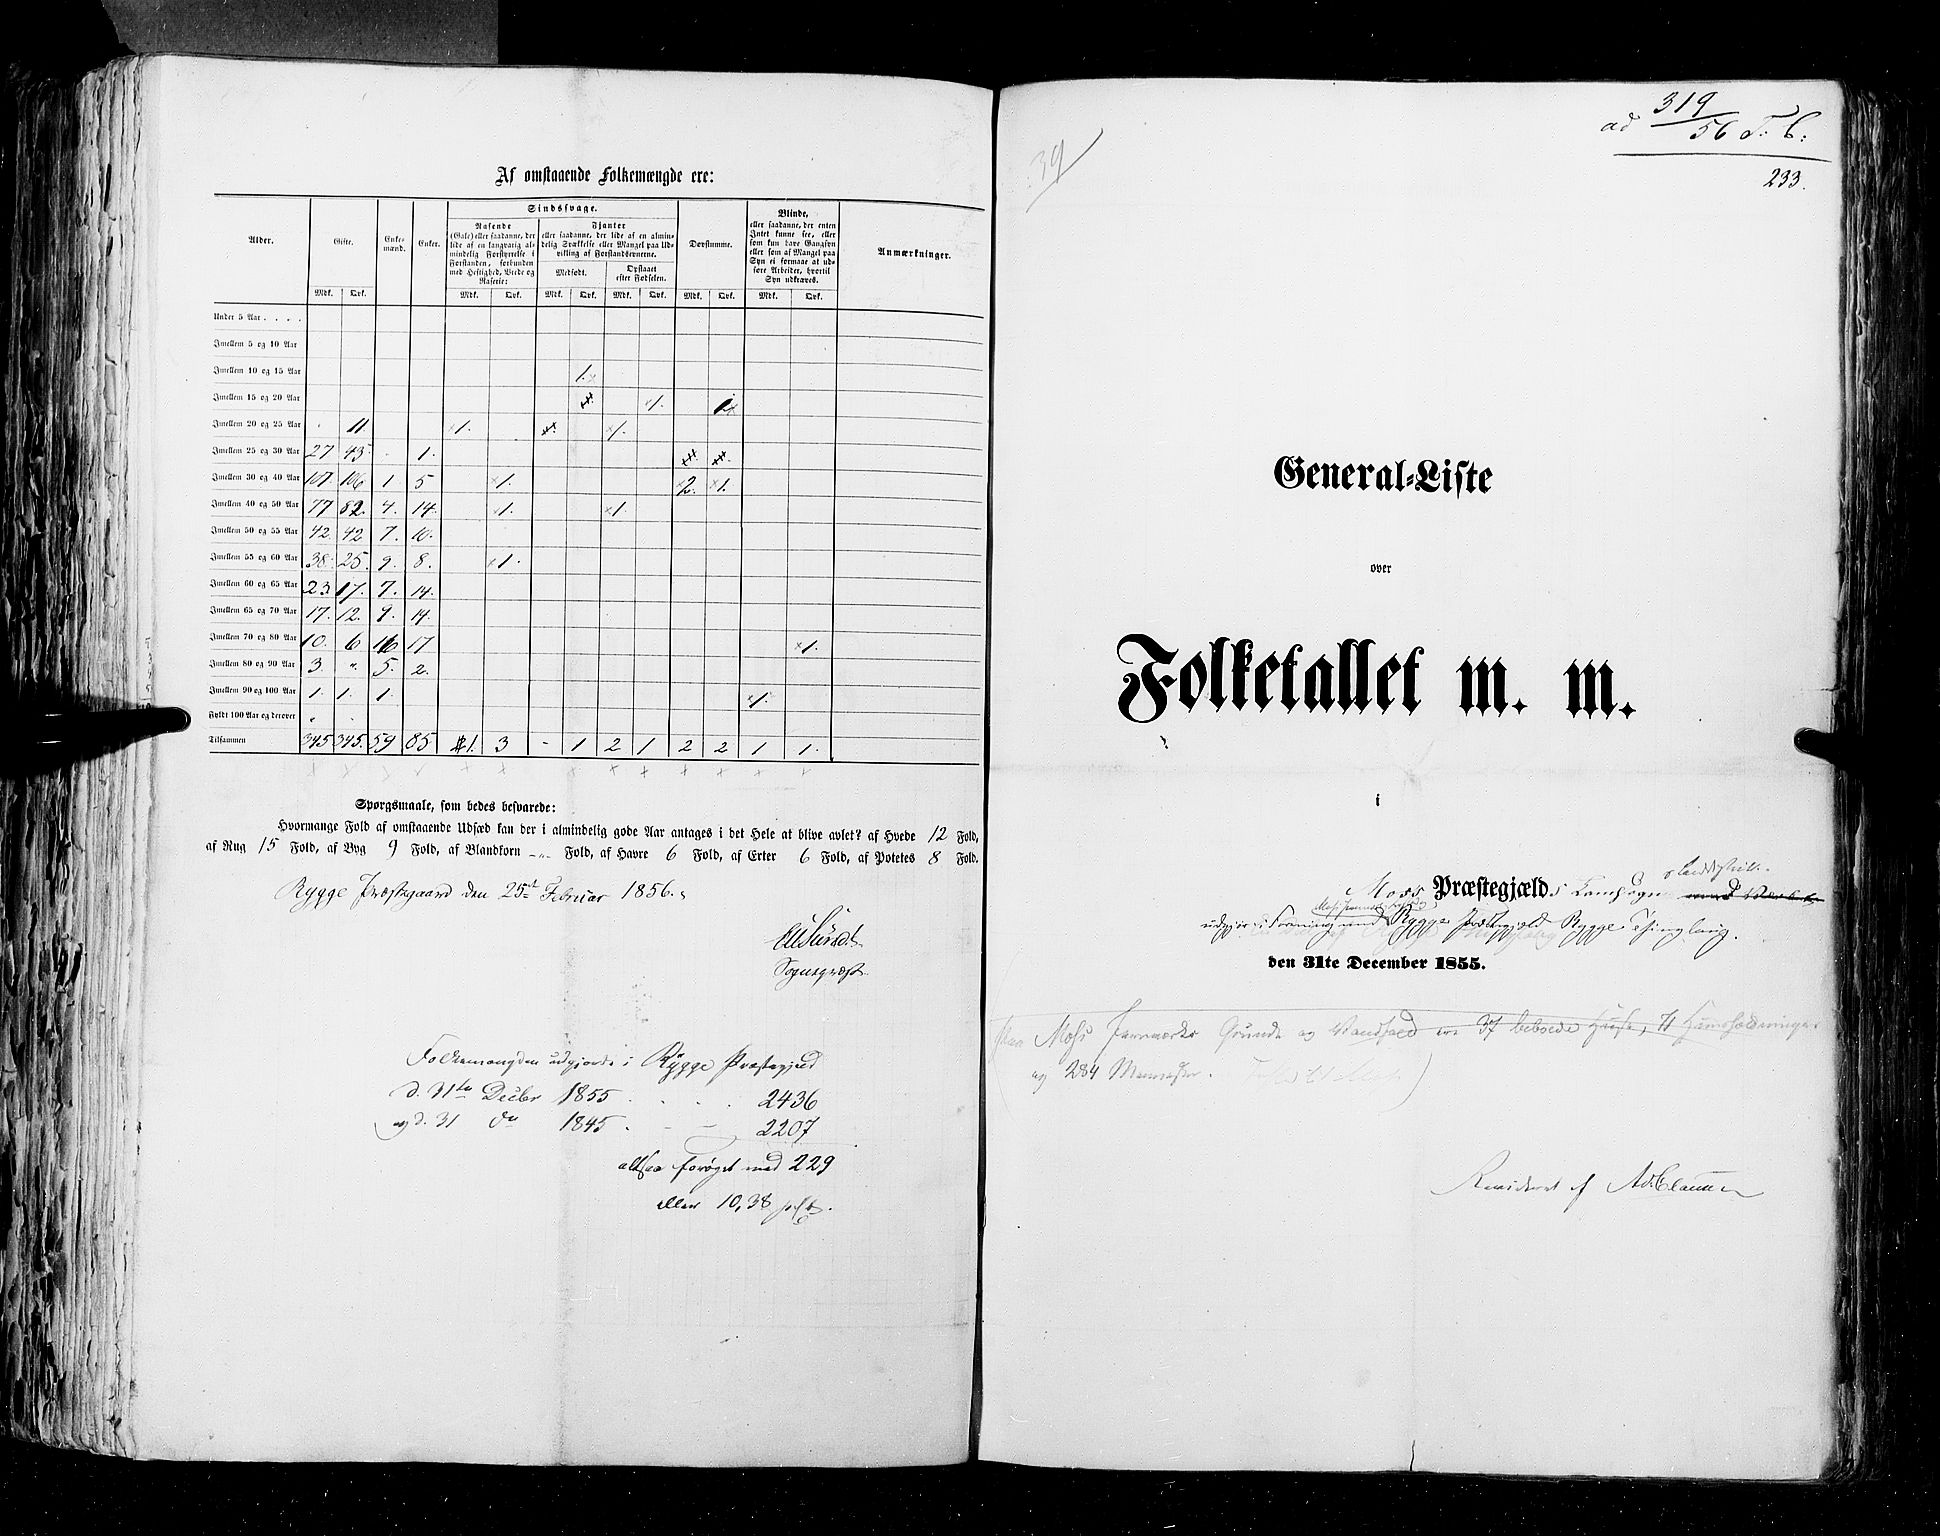 RA, Folketellingen 1855, bind 1: Akershus amt, Smålenenes amt og Hedemarken amt, 1855, s. 233